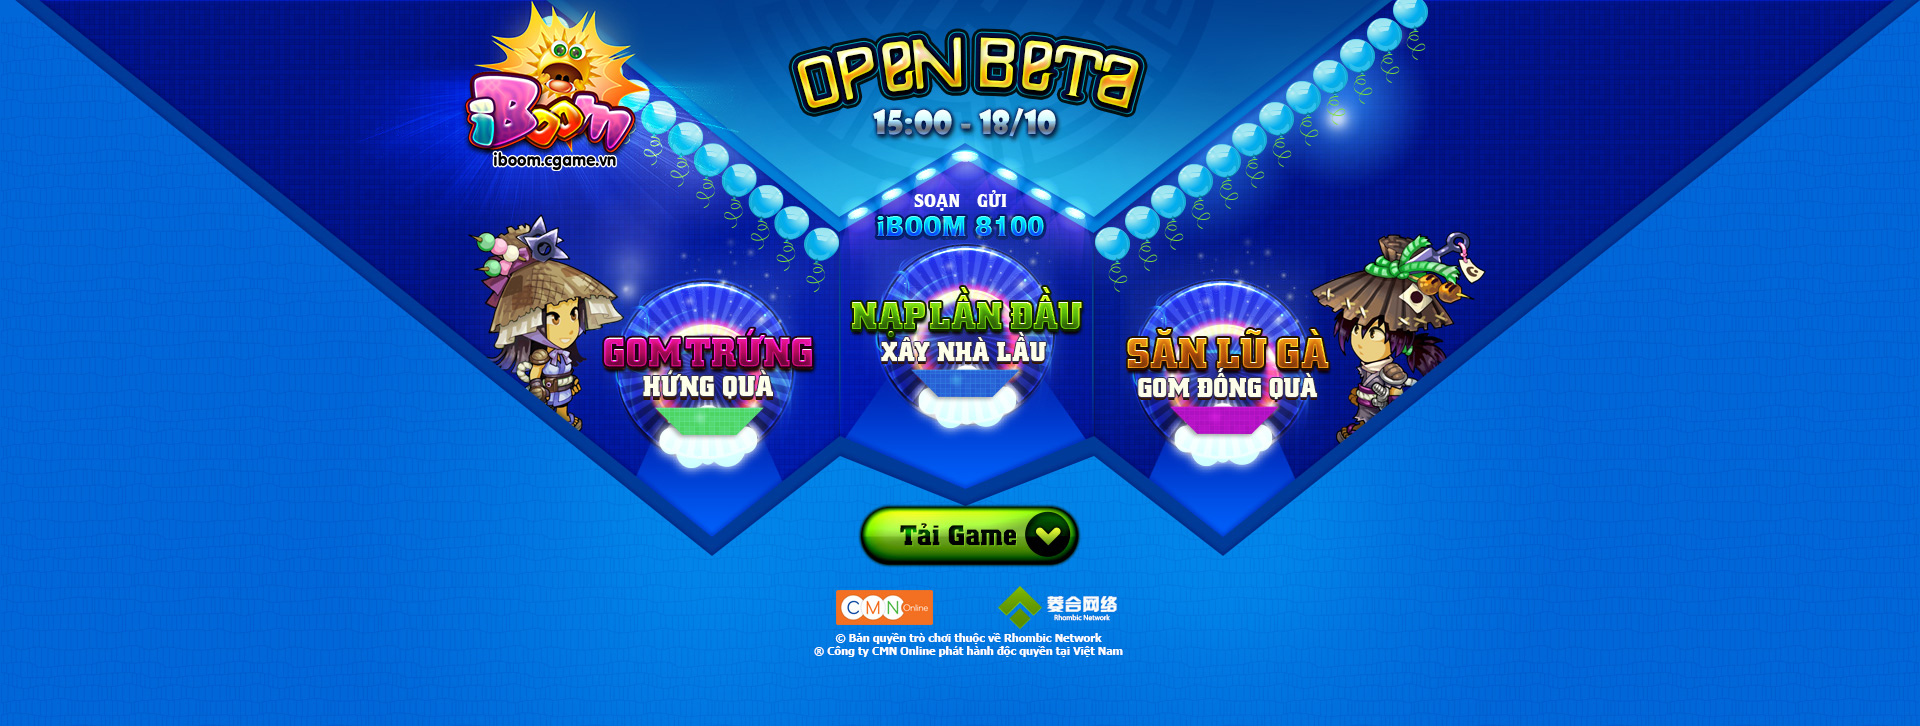 Khám phá  iBoom trong ngày mở cửa Open Beta tại Việt Nam 1